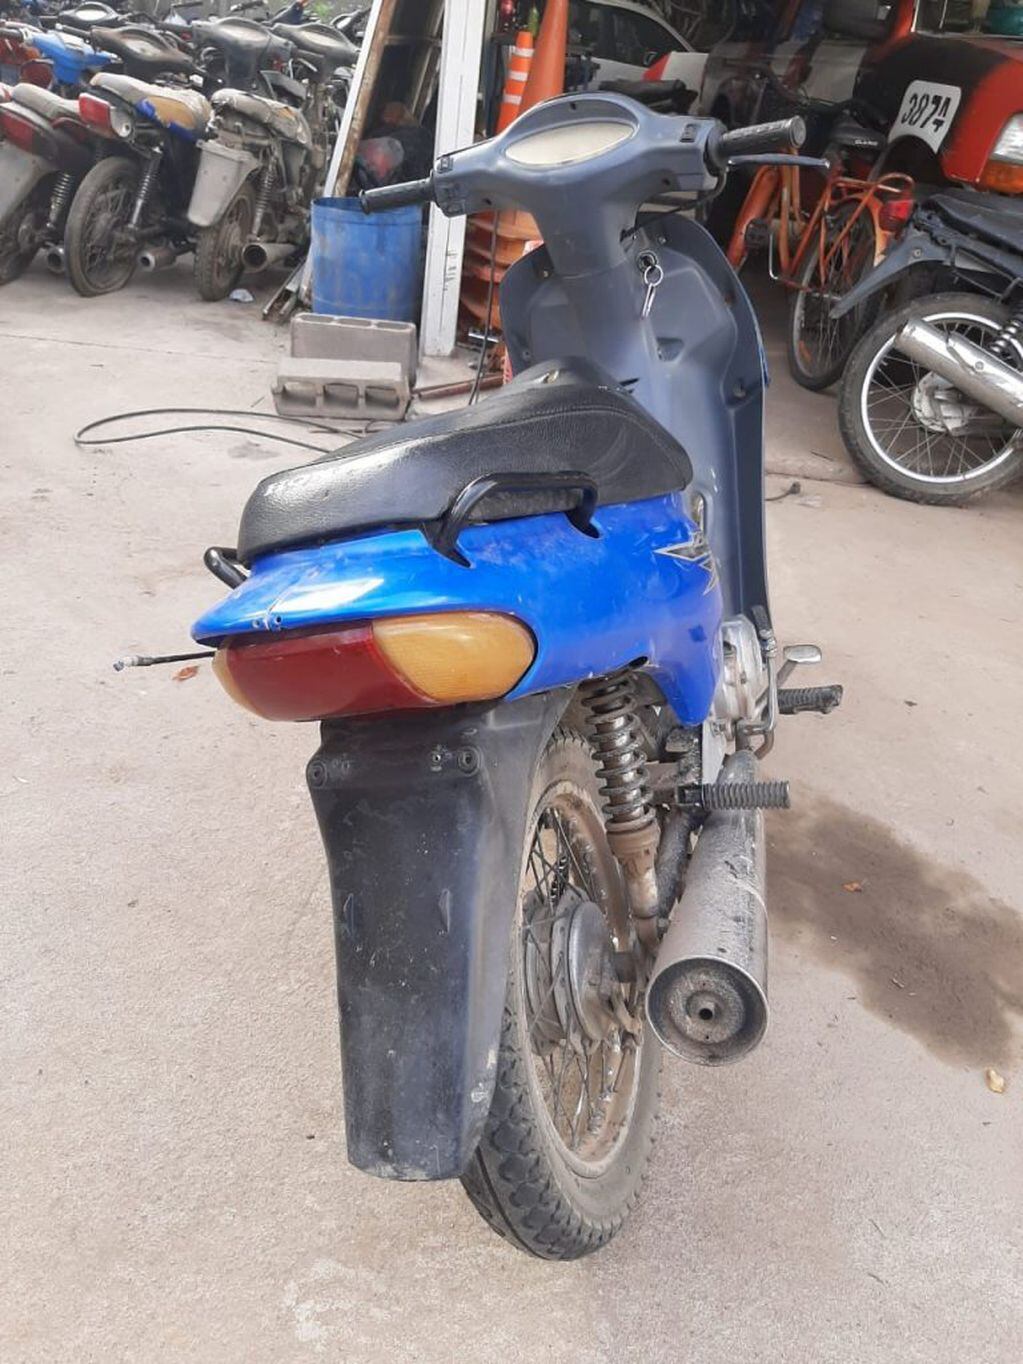 Motocicleta secuestrada en Arroyito por Policia Caminera